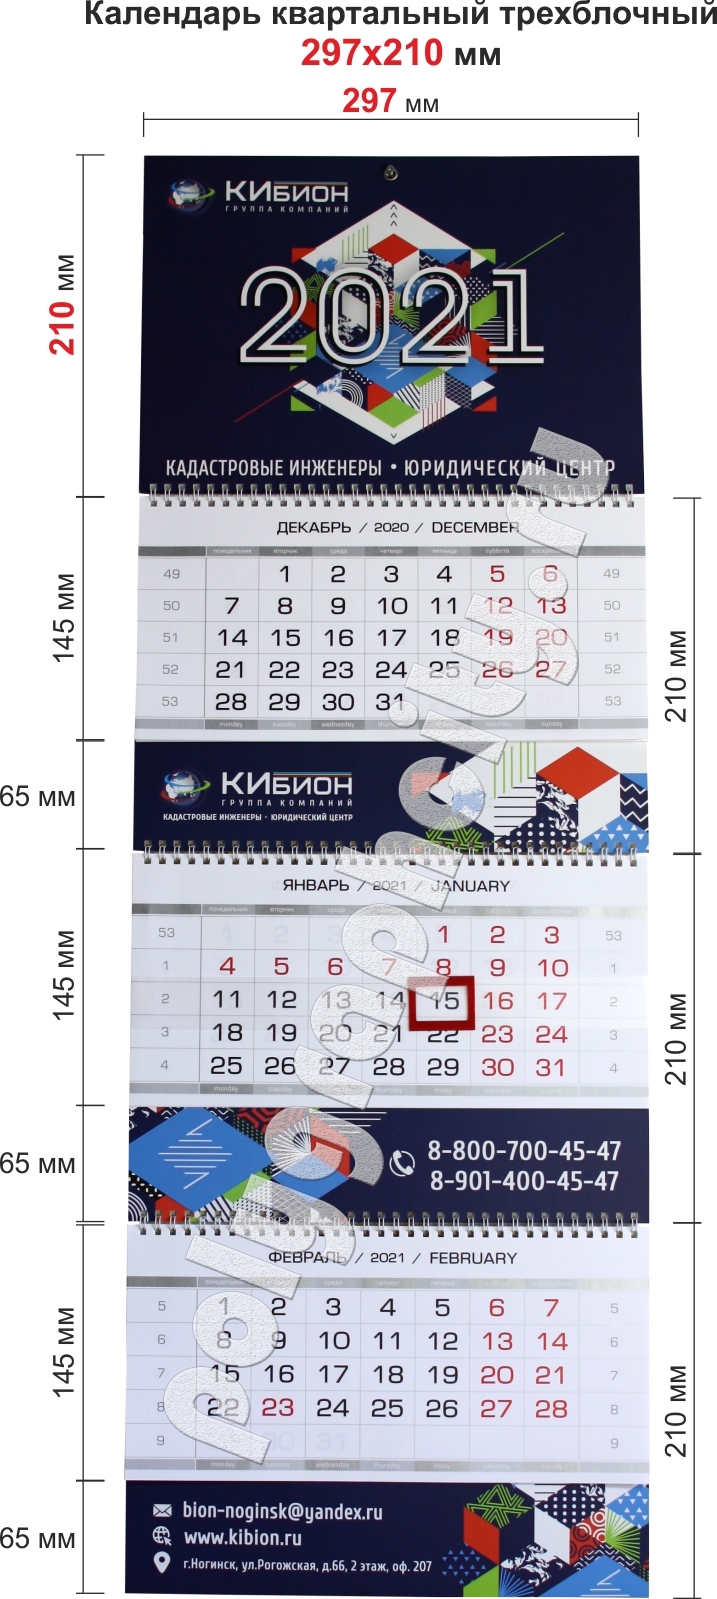 Календарь квартальный гольф-класса на одной пружине компании FORMAX